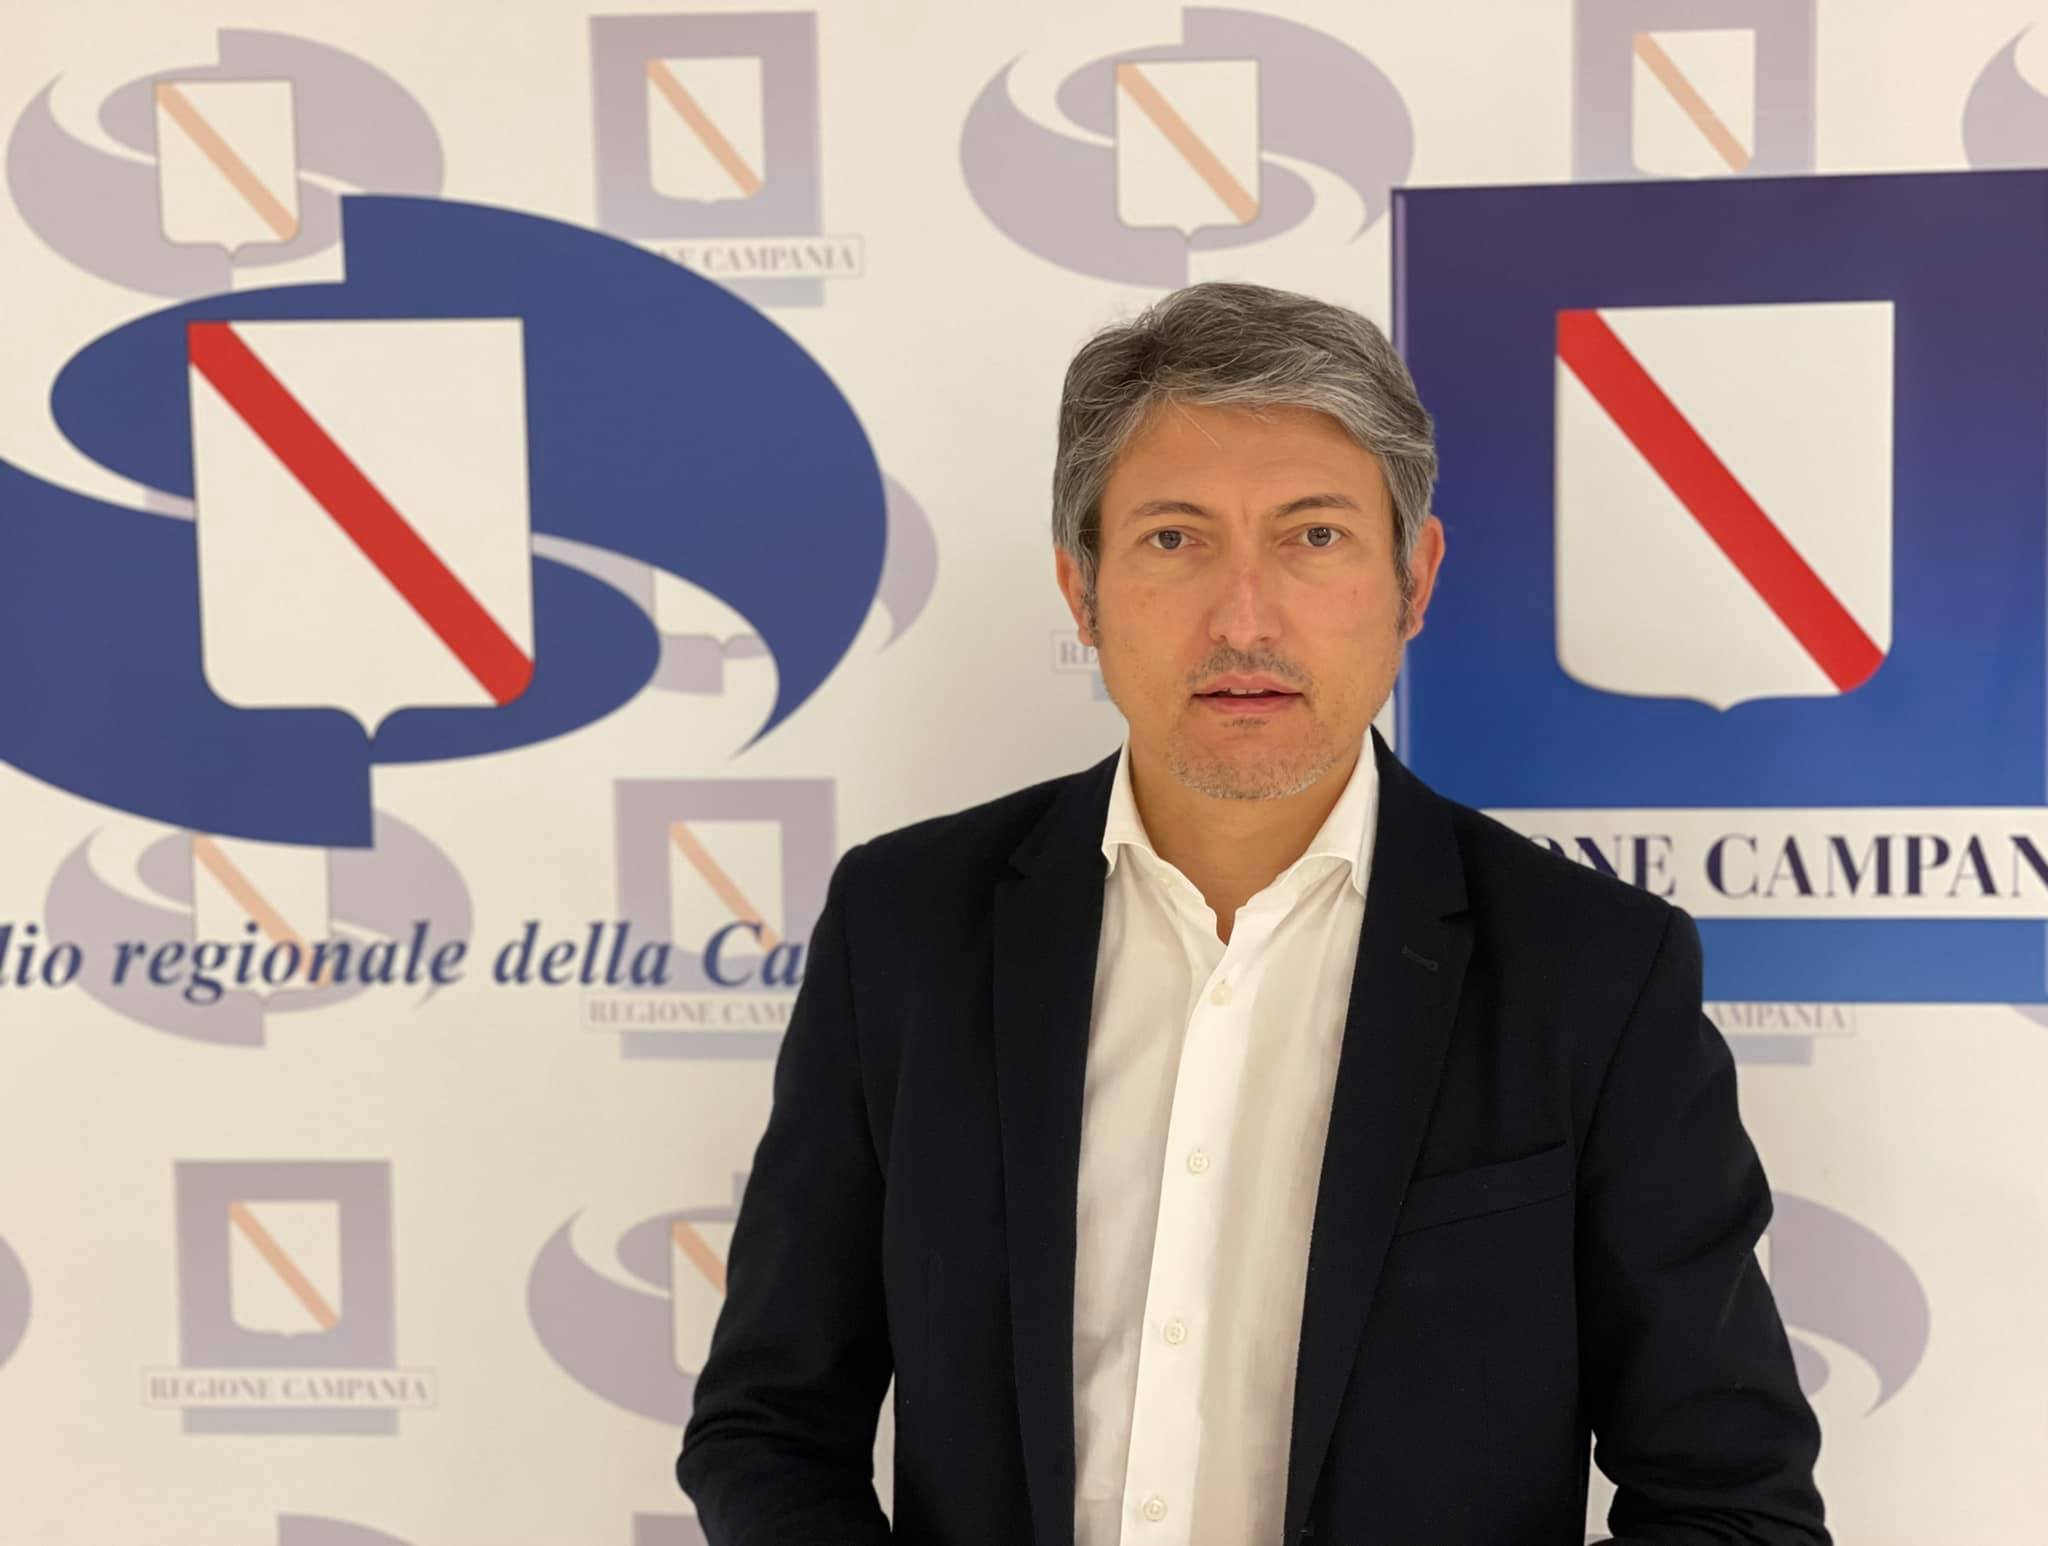 Sanità: Pellegrino: «Misure urgenti per garantire la salute nelle aree periferiche e interne della Campania»